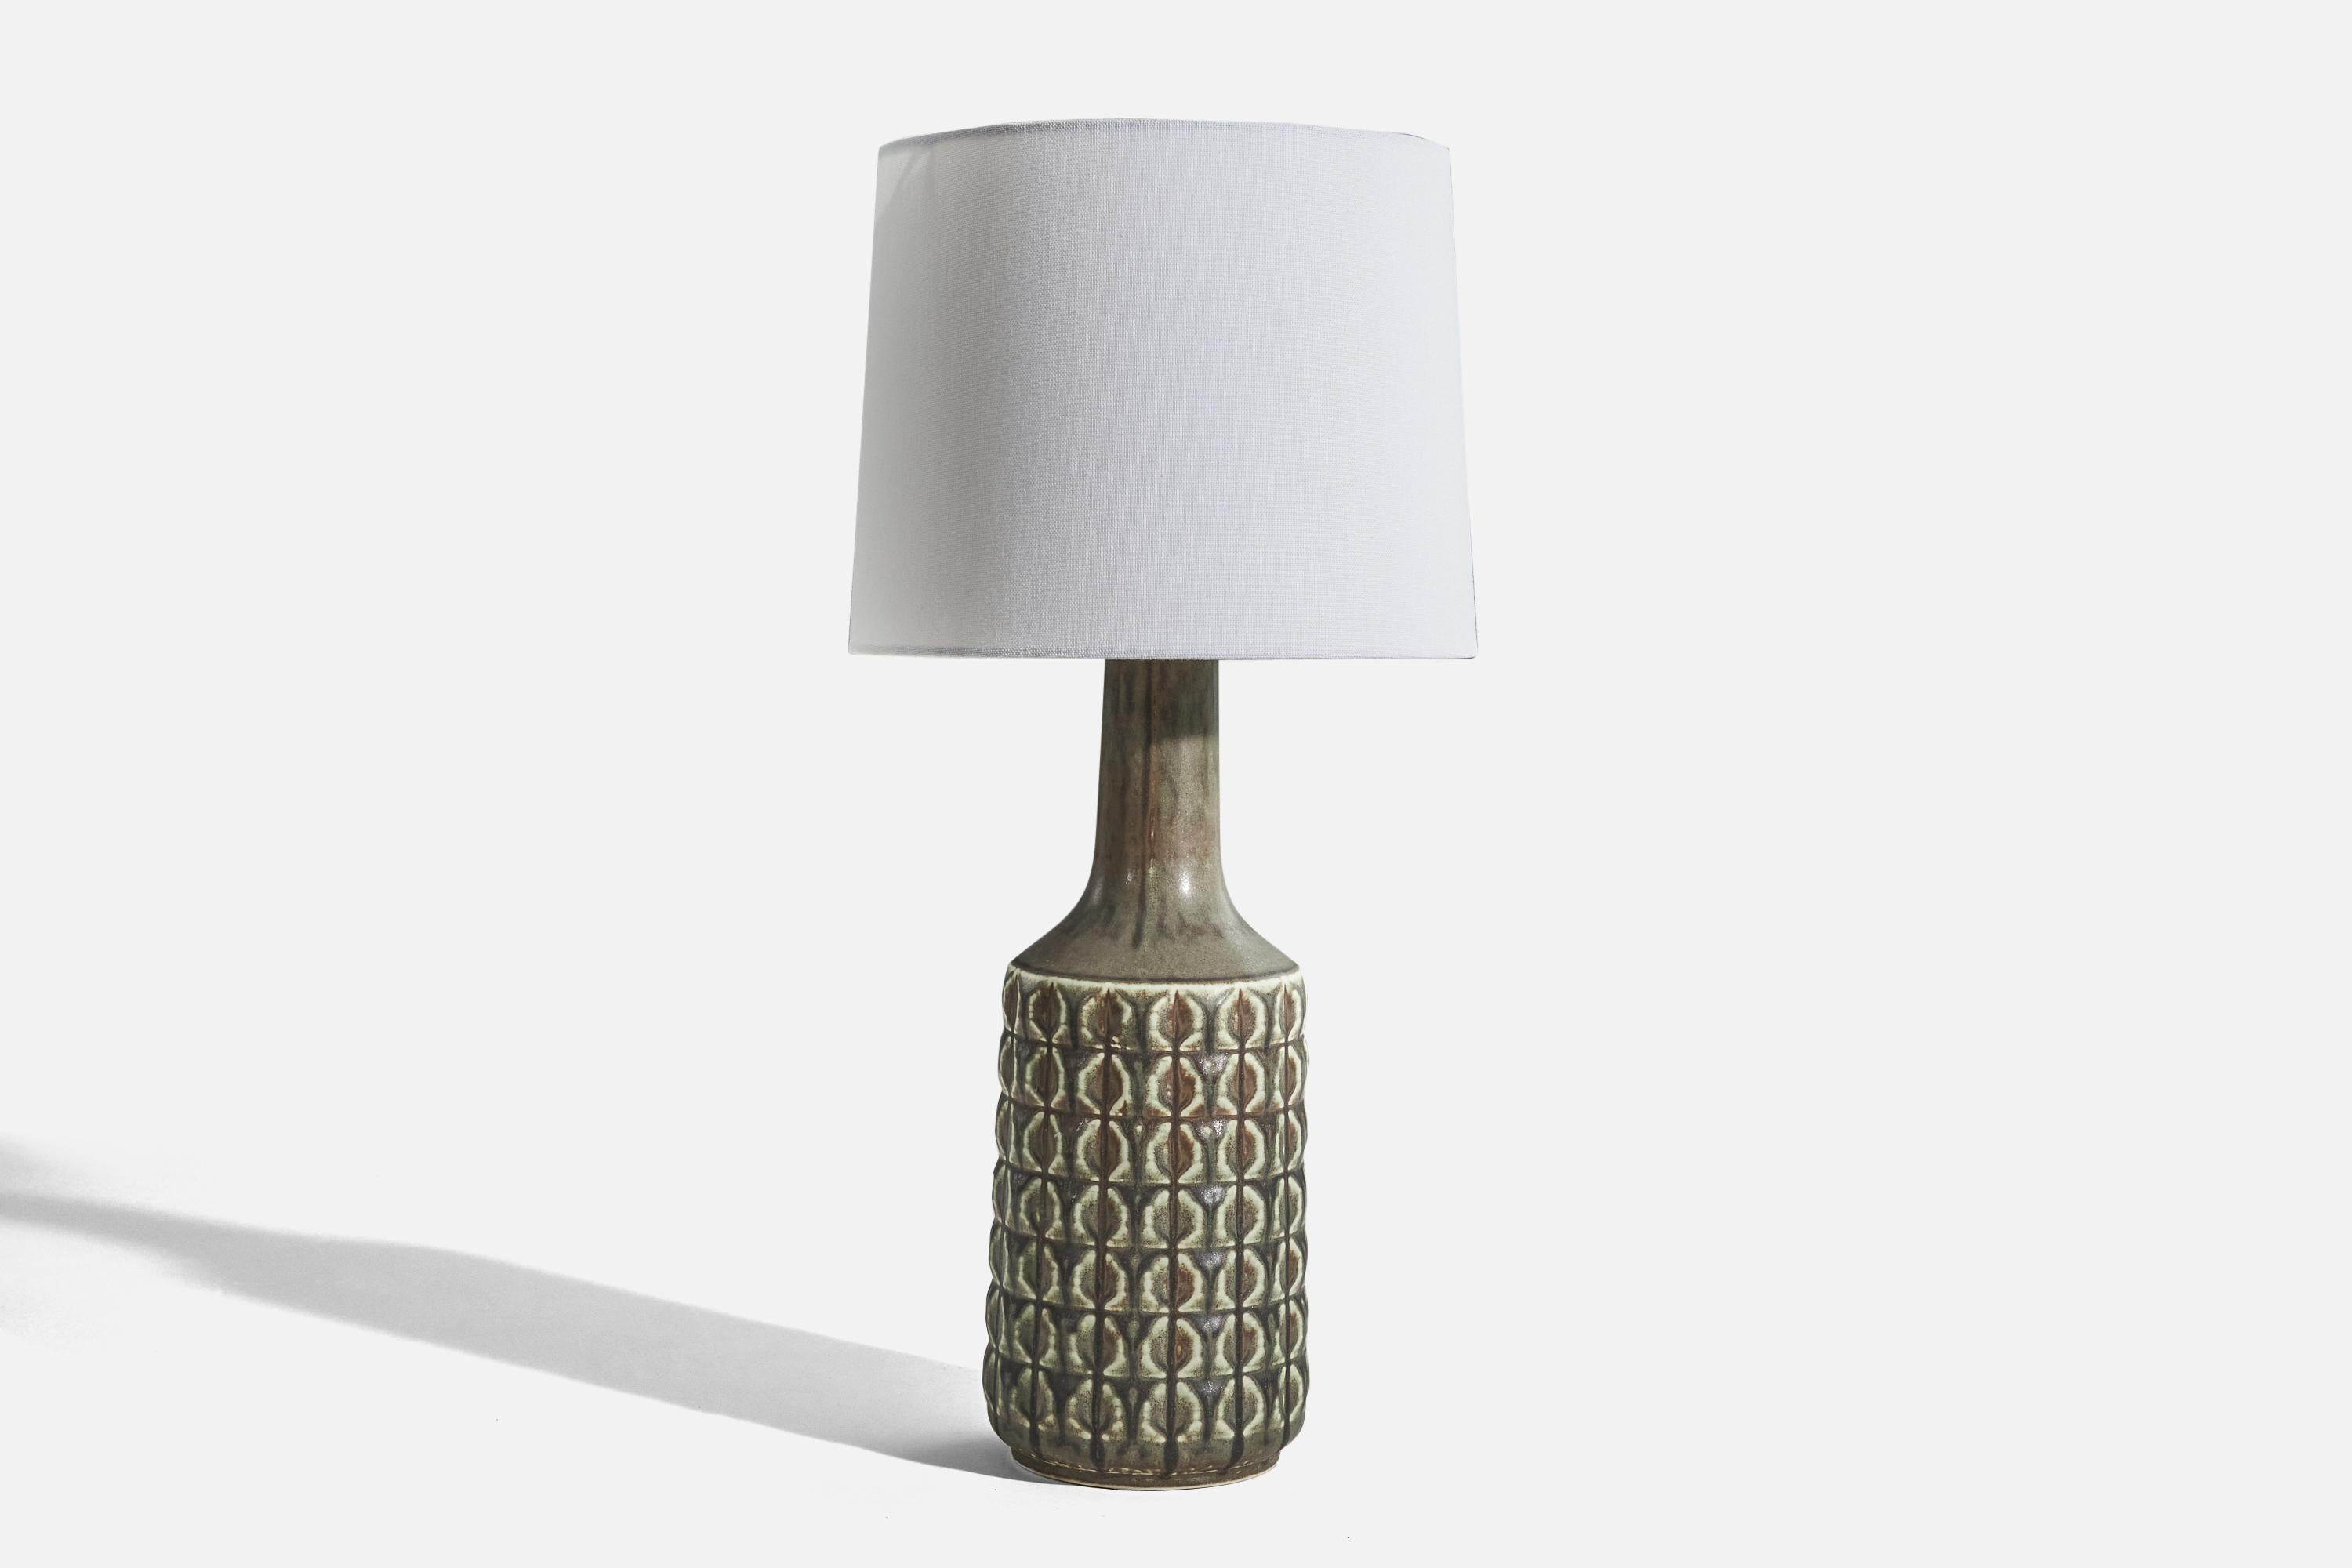 Lampe de table en grès émaillé gris, conçue et produite par Desiree Stentøj, Danemark, vers les années 1960. 

Vendu sans abat-jour. 
Dimensions de la lampe (pouces) : 16.43 x 5,31 x 5,31 (H x L x P)
Dimensions de l'abat-jour (pouces) : 9 x 10 x